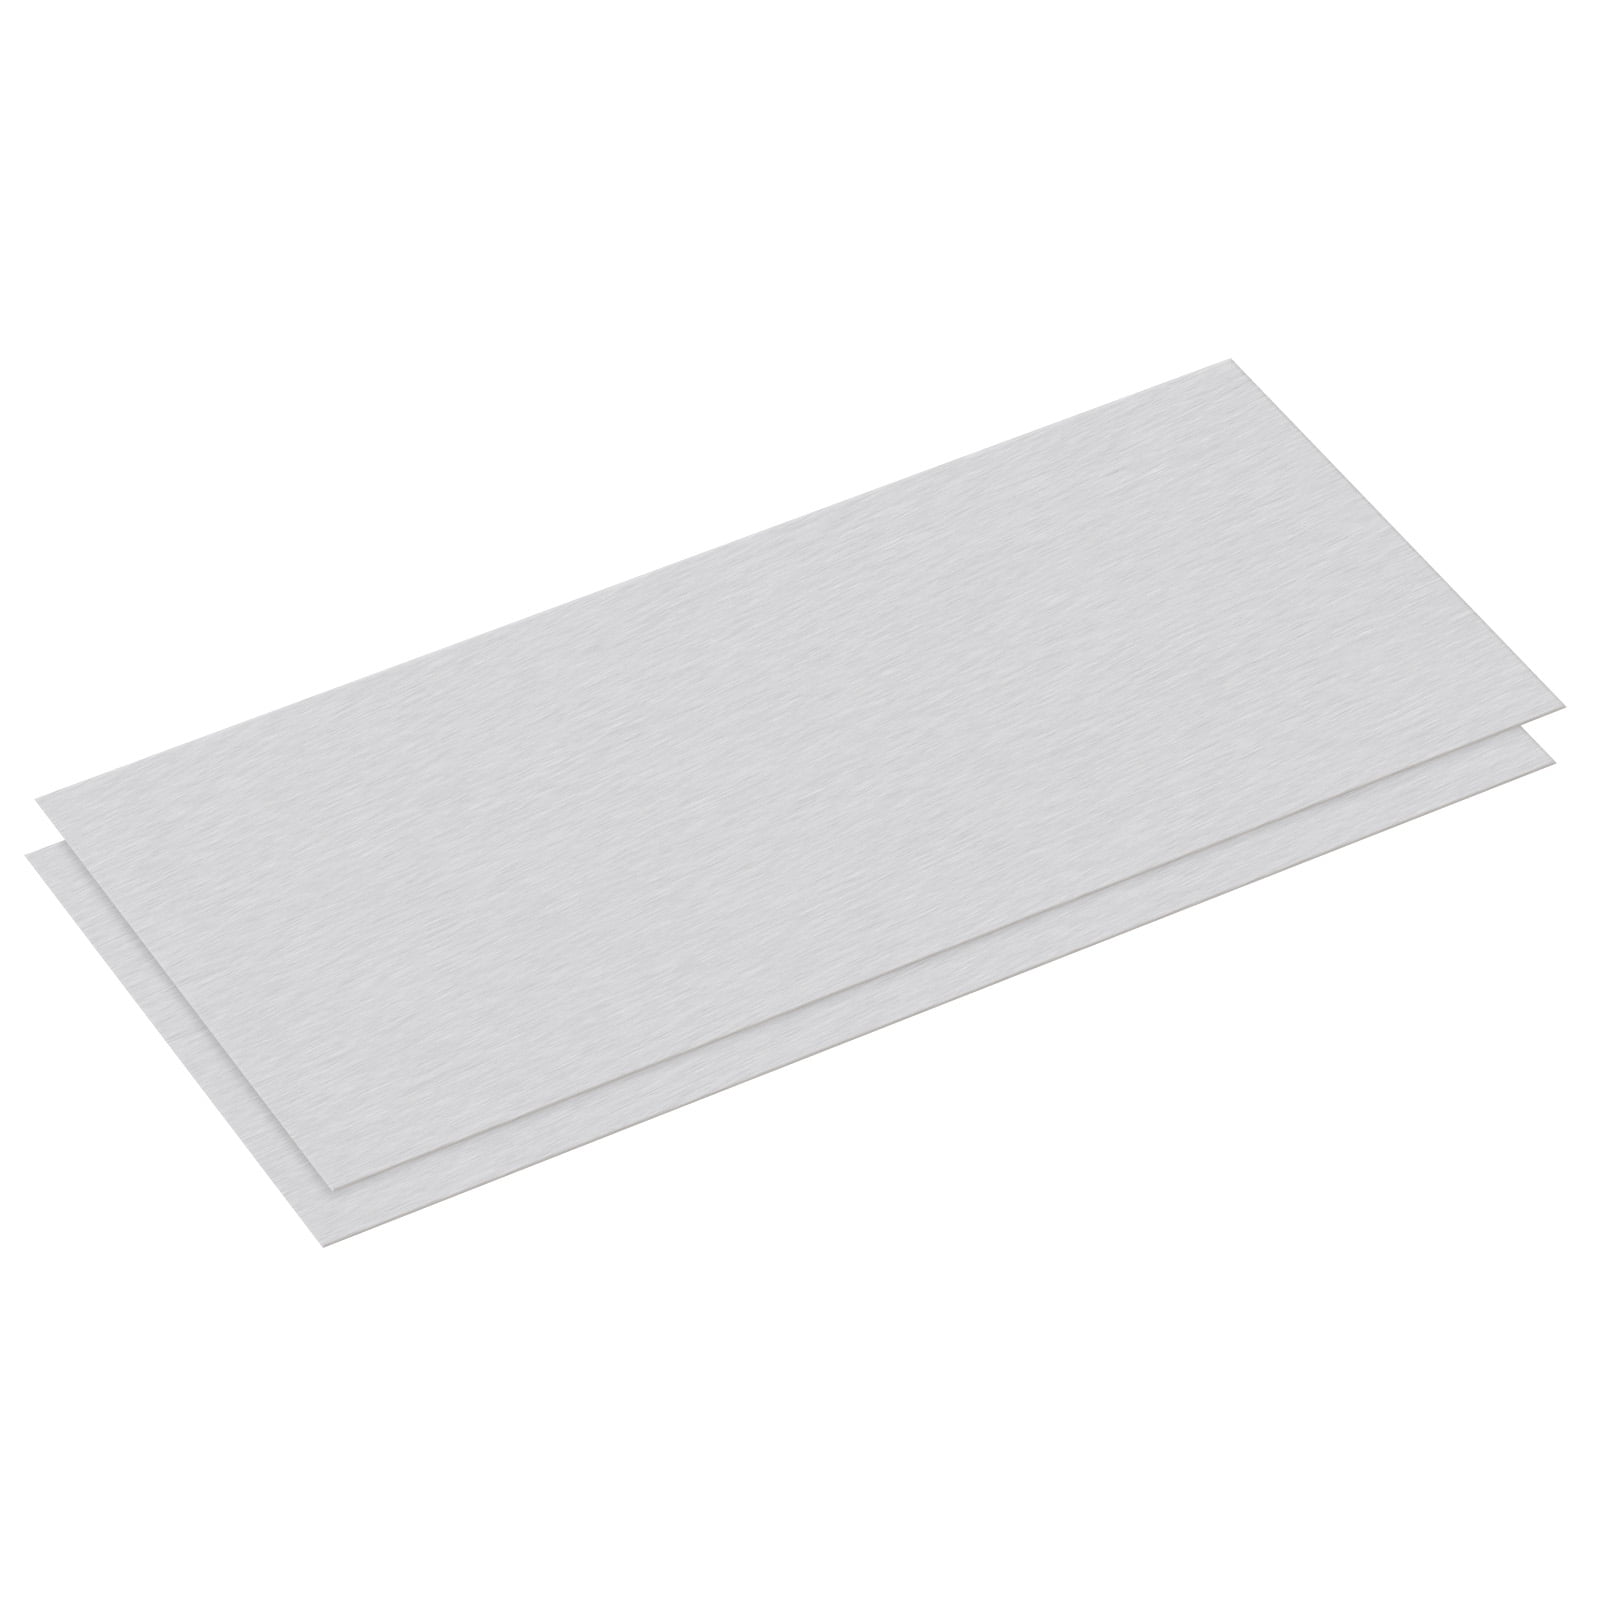 uxcell Aluminum Sheet, 300mm x 150mm x 1mm Thickness 6061 T6 Aluminum Plate